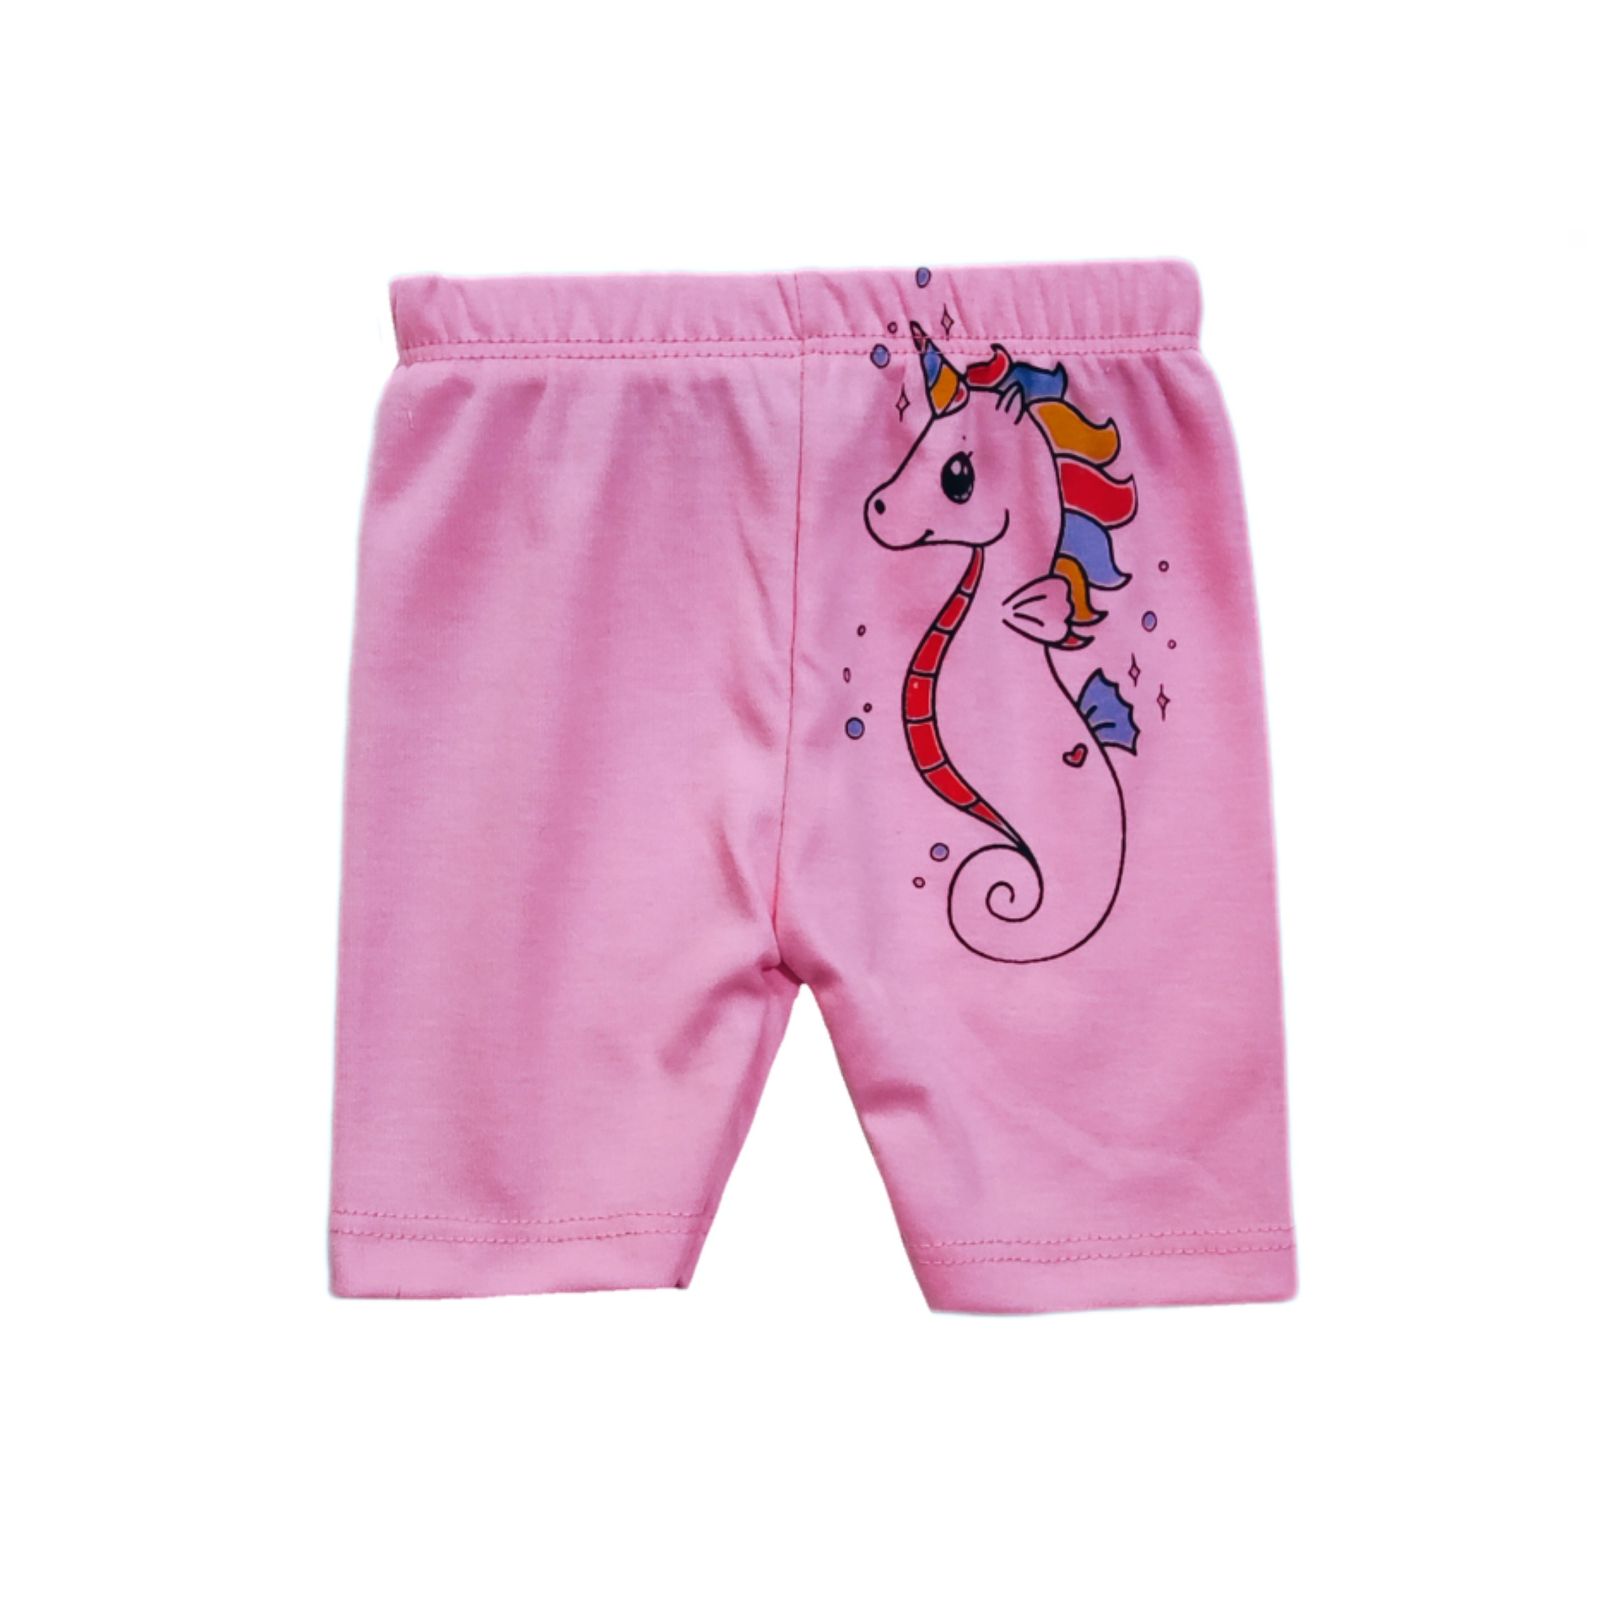 ست 3 تکه لباس نوزادی سرینیکو مدل Unicorn کد B03 -  - 2